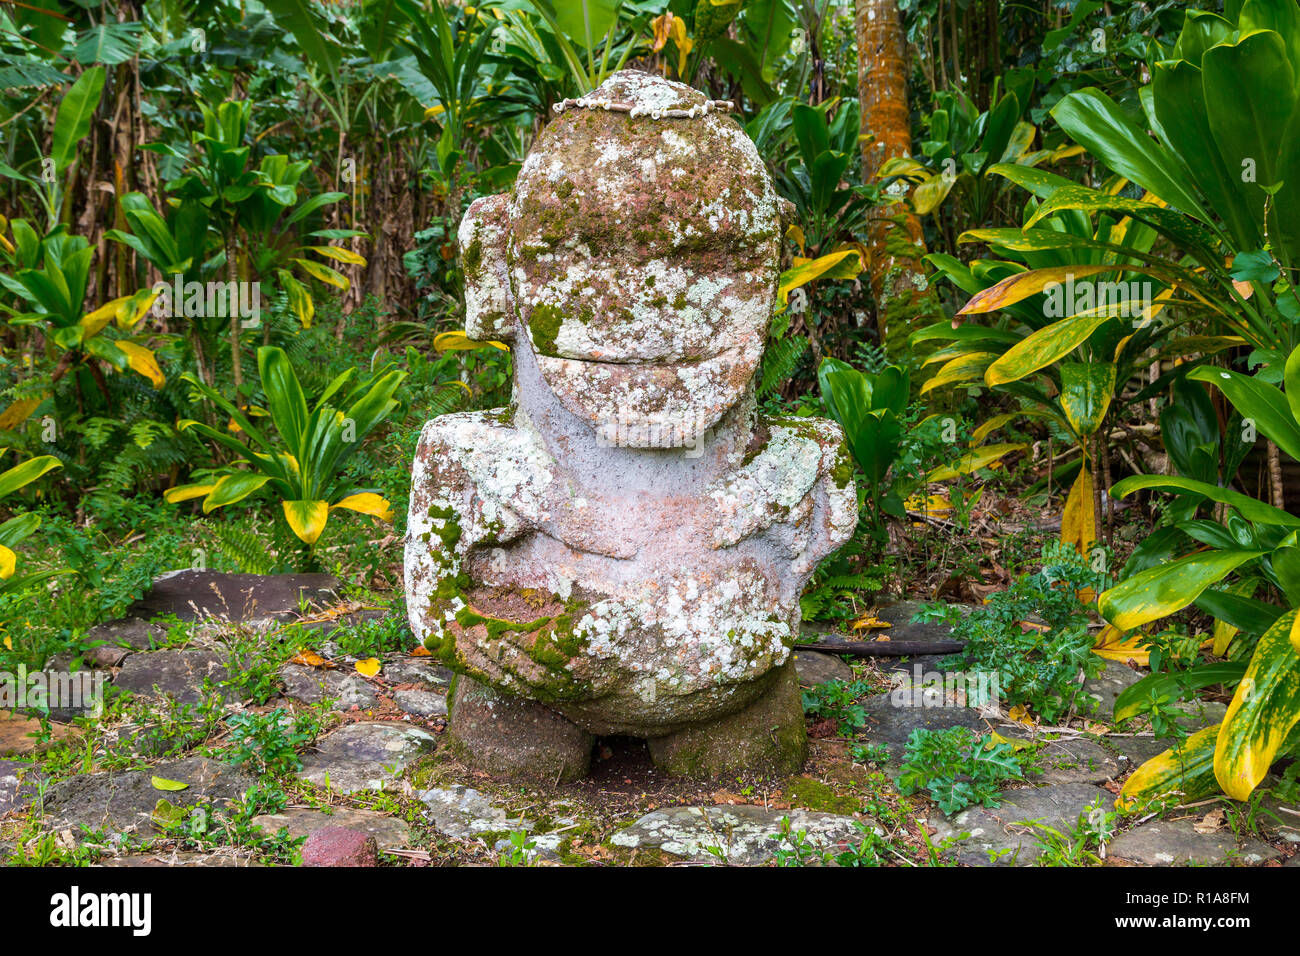 Lächelnden Tiki. Stein tiki-Polynesischen heilige Idol Statue im Dschungel versteckt. Insel Raivavae, Astralen Inseln (tubuai), Französisch Polynesien, Ozeanien Stockfoto